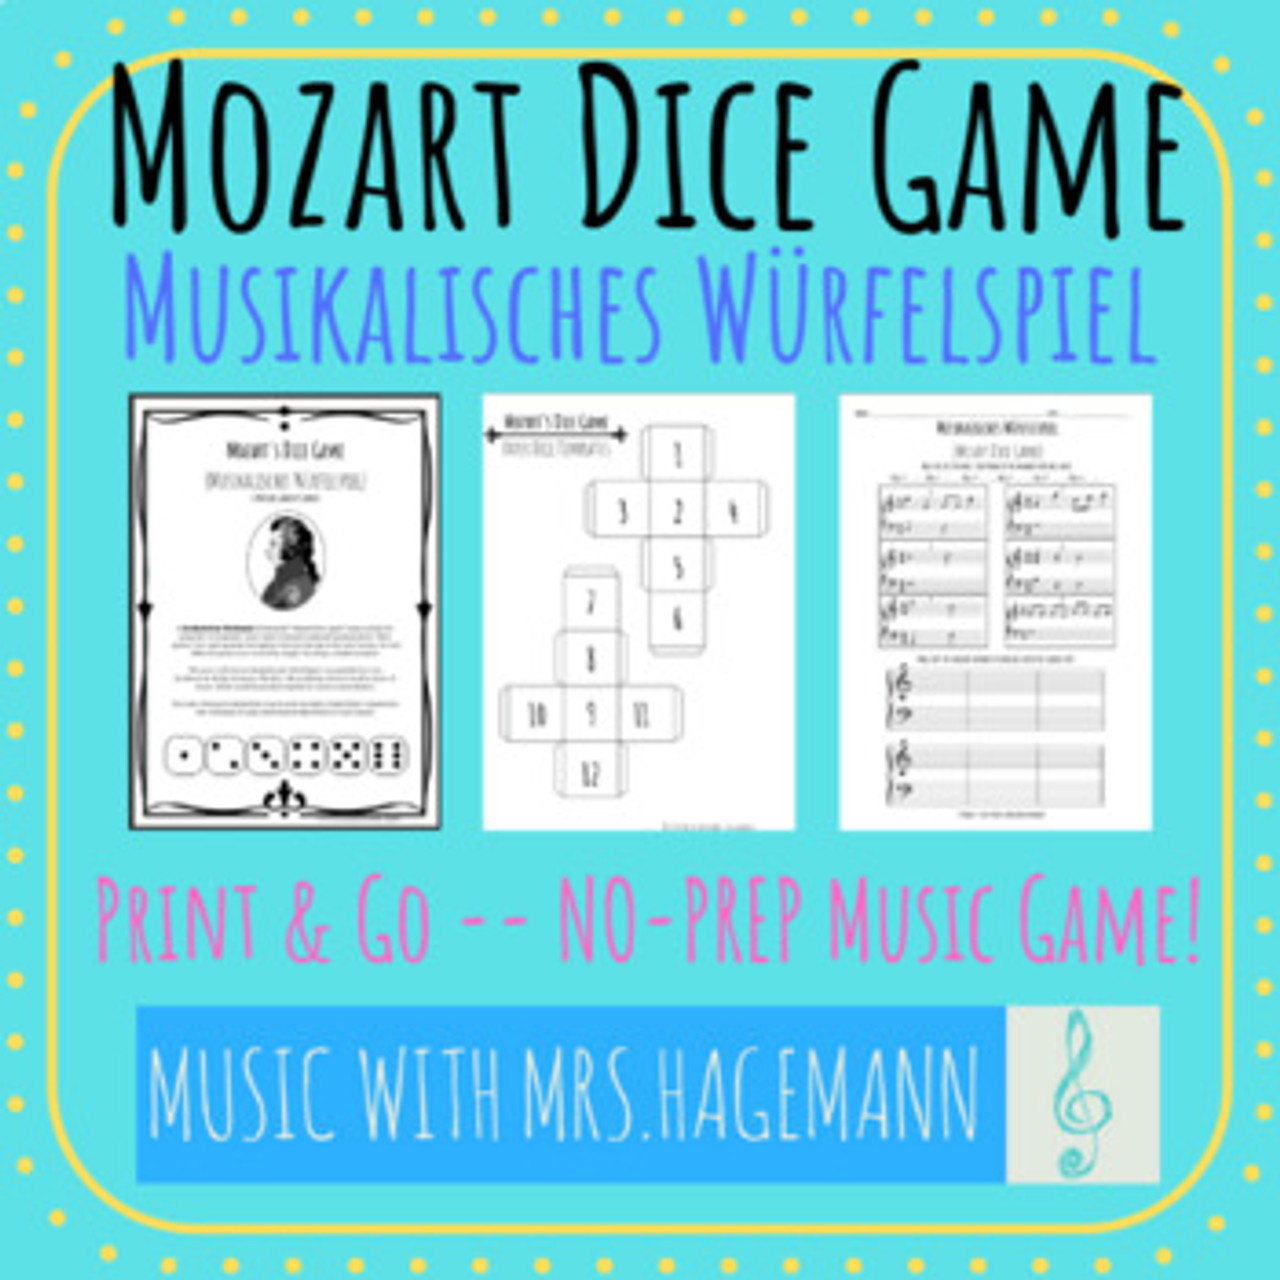 Mozart's Musical Dice Game (Musikalisches Würfelspiel)